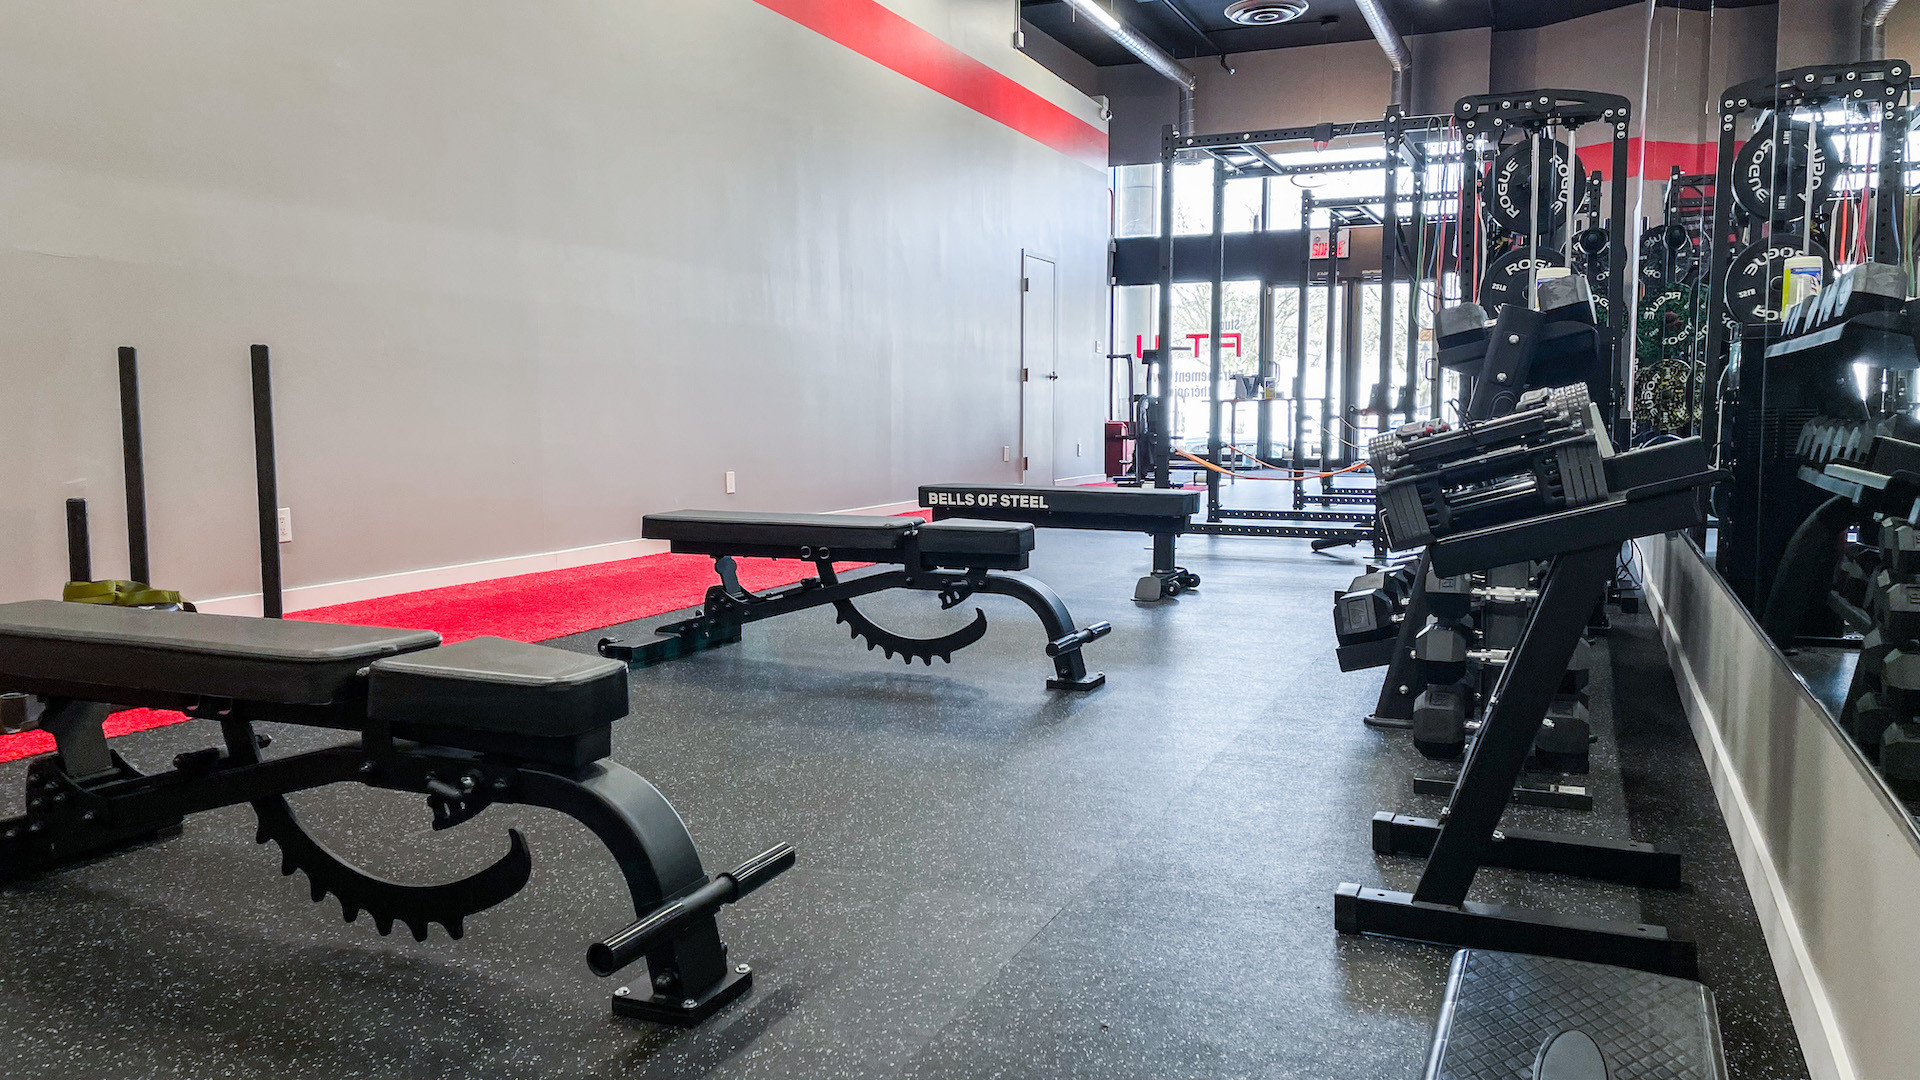 Vue intérieure de Studio Fit U, un gym privé à Montréal, illustrant un environnement d'entraînement professionnel équipé de matériel moderne pour optimiser les séances d'entraînement personnalisées.